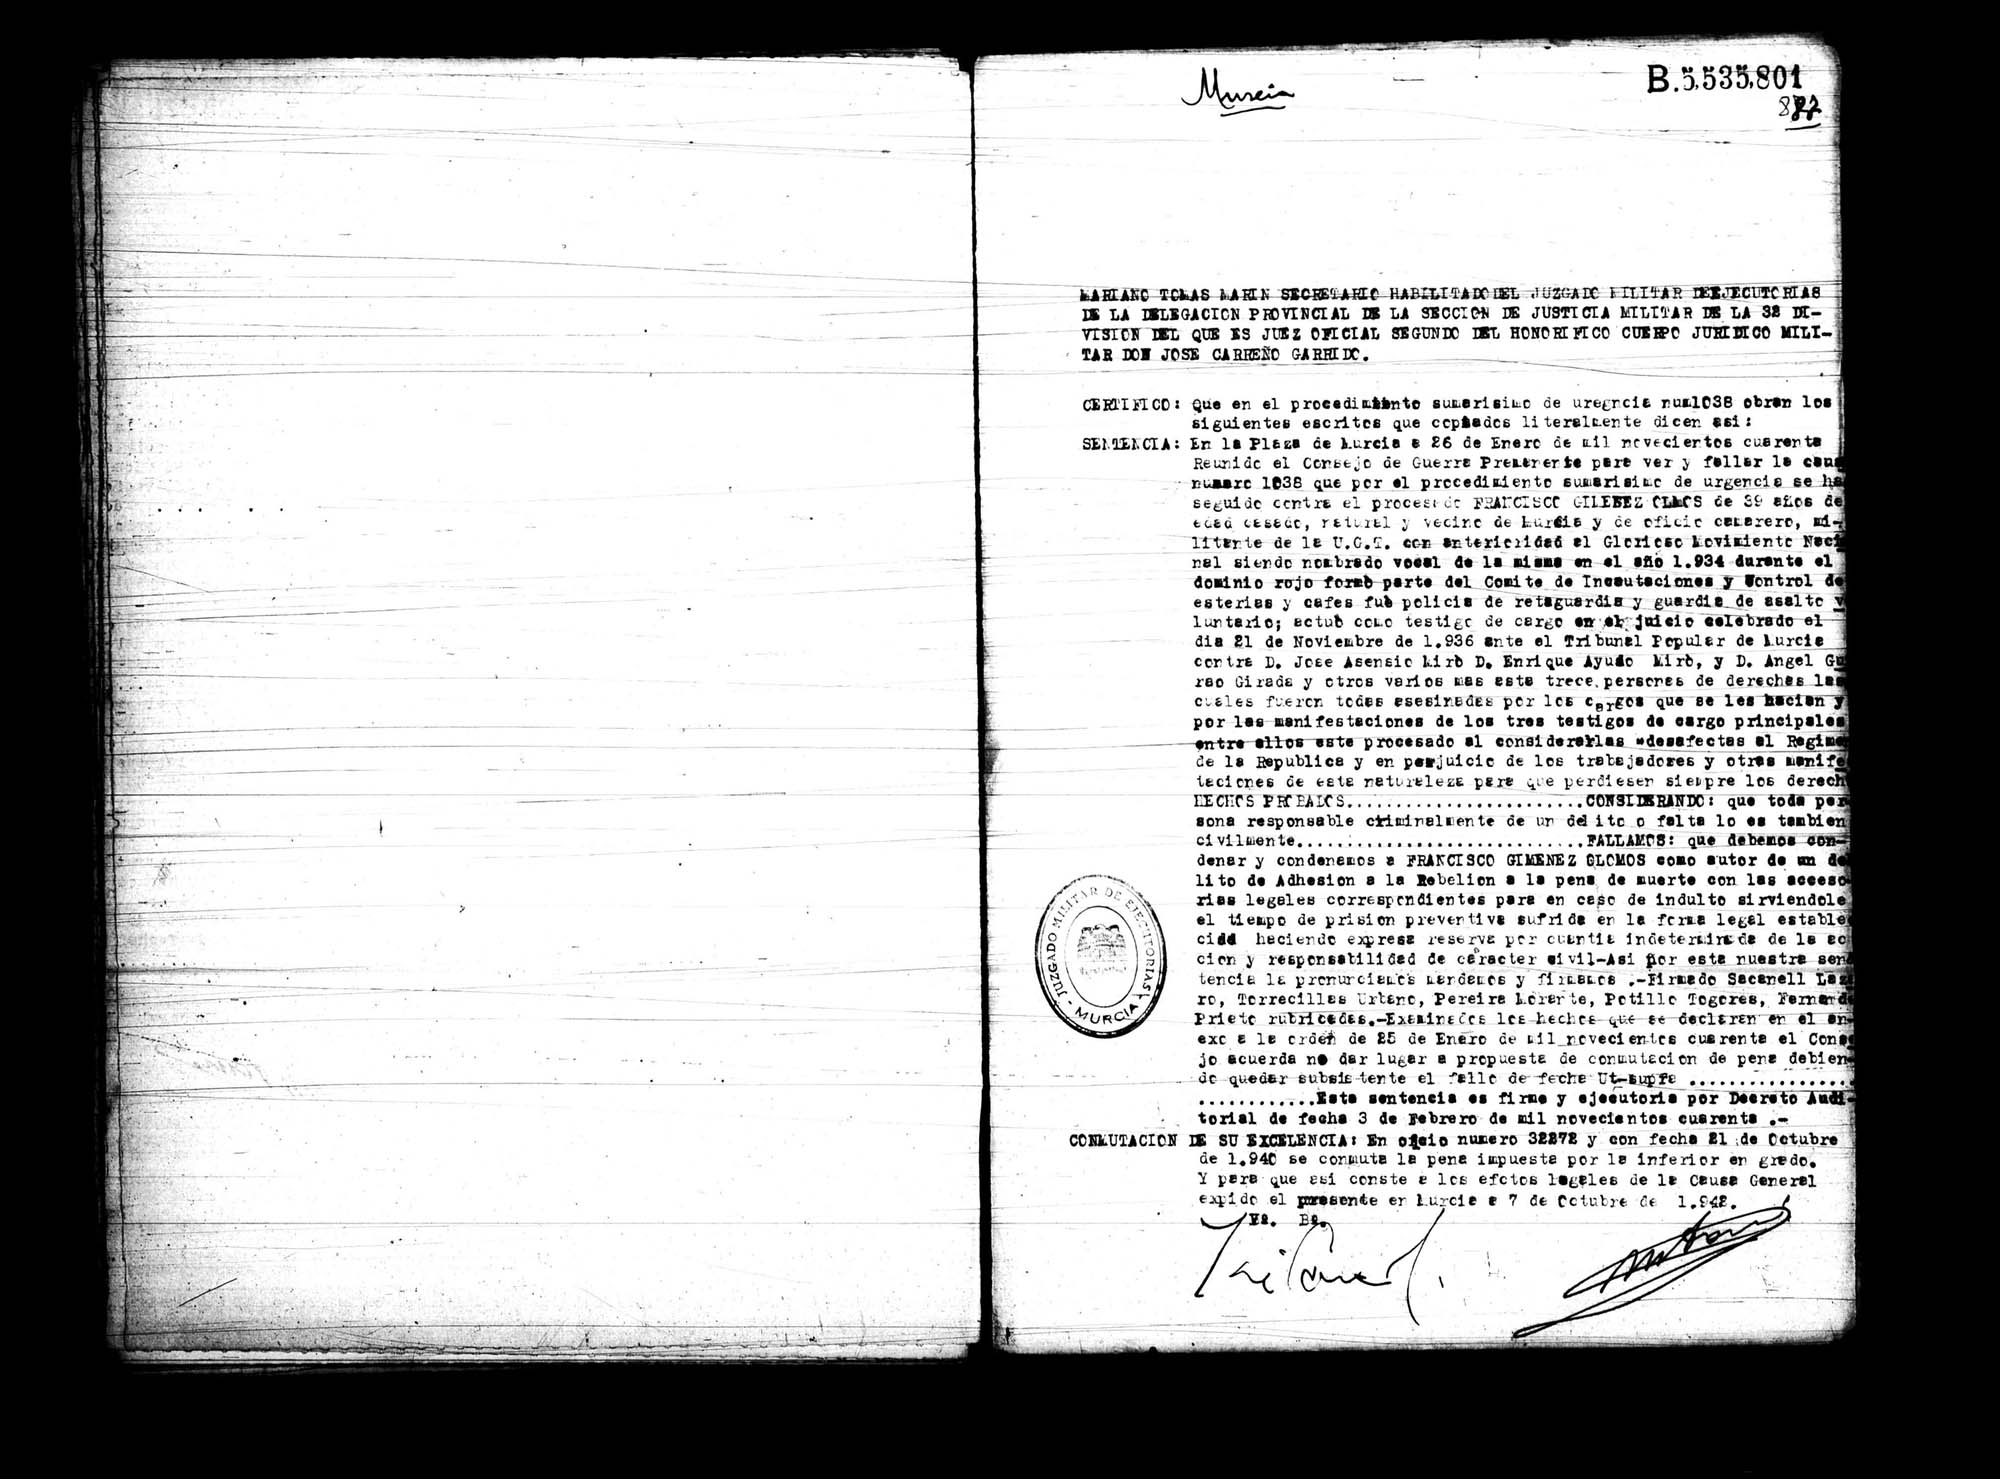 Certificado de la sentencia pronunciada contra Francisco Giménez Olmos, causa 1038, el 26 de enero de 1940 en Murcia.